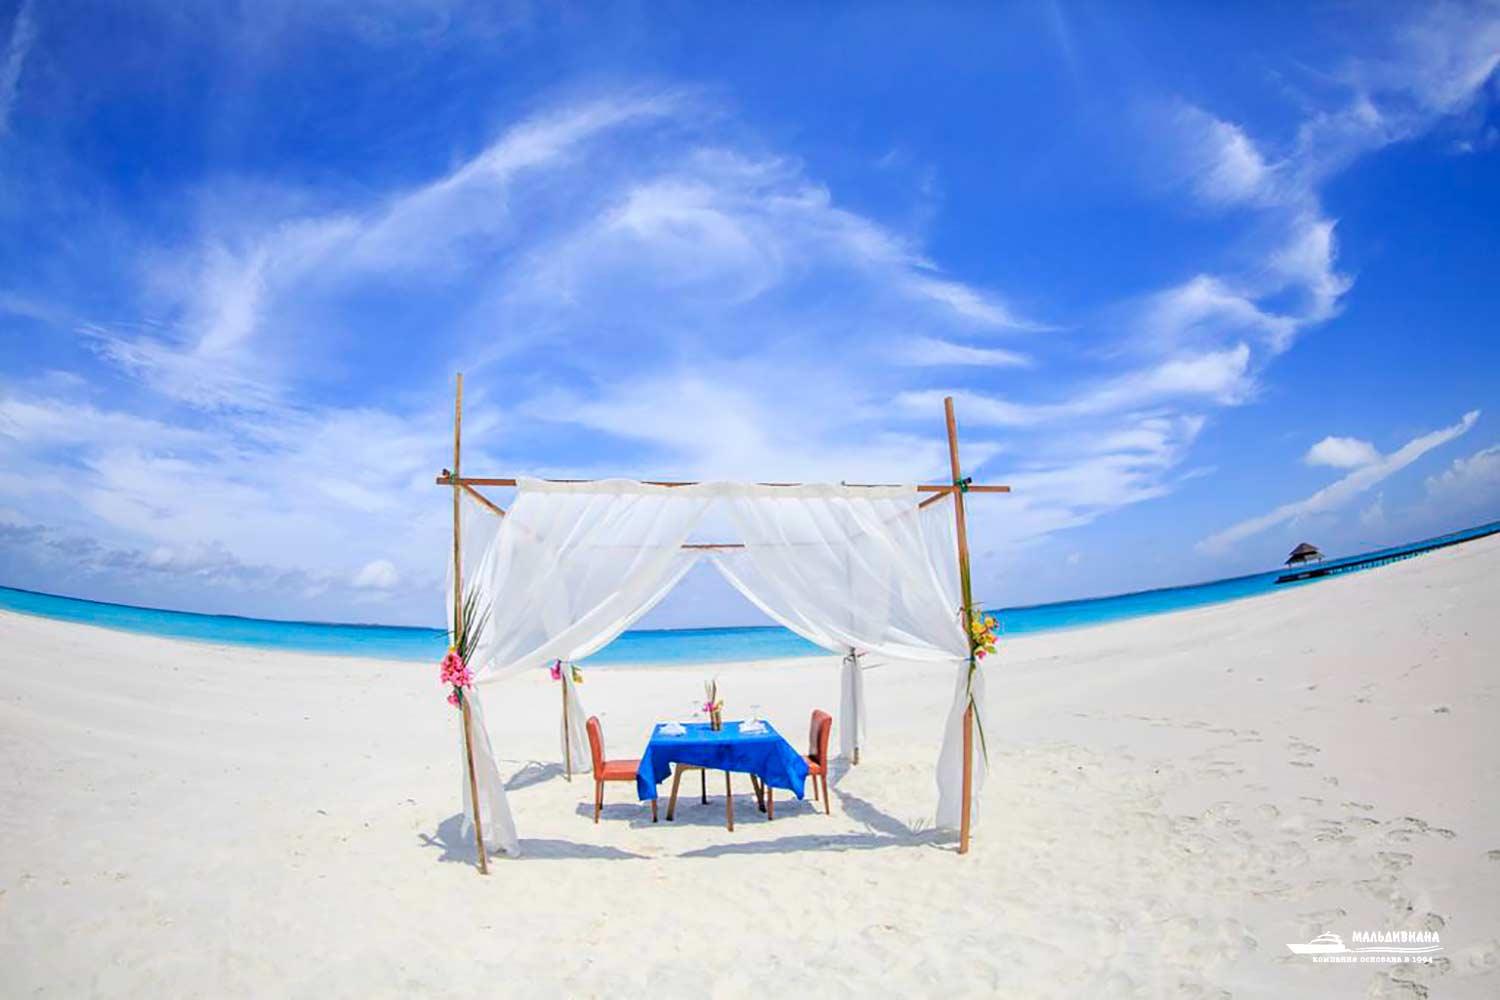 Hondaafushi island 4. Хондафуши Айленд Резорт. Hondaafushi Island Resort Maldives. Hondaafushi Мальдивы Исланд Резорт. Hondaafushi Island Resort 4* (Хаа Даалу Aтолл).